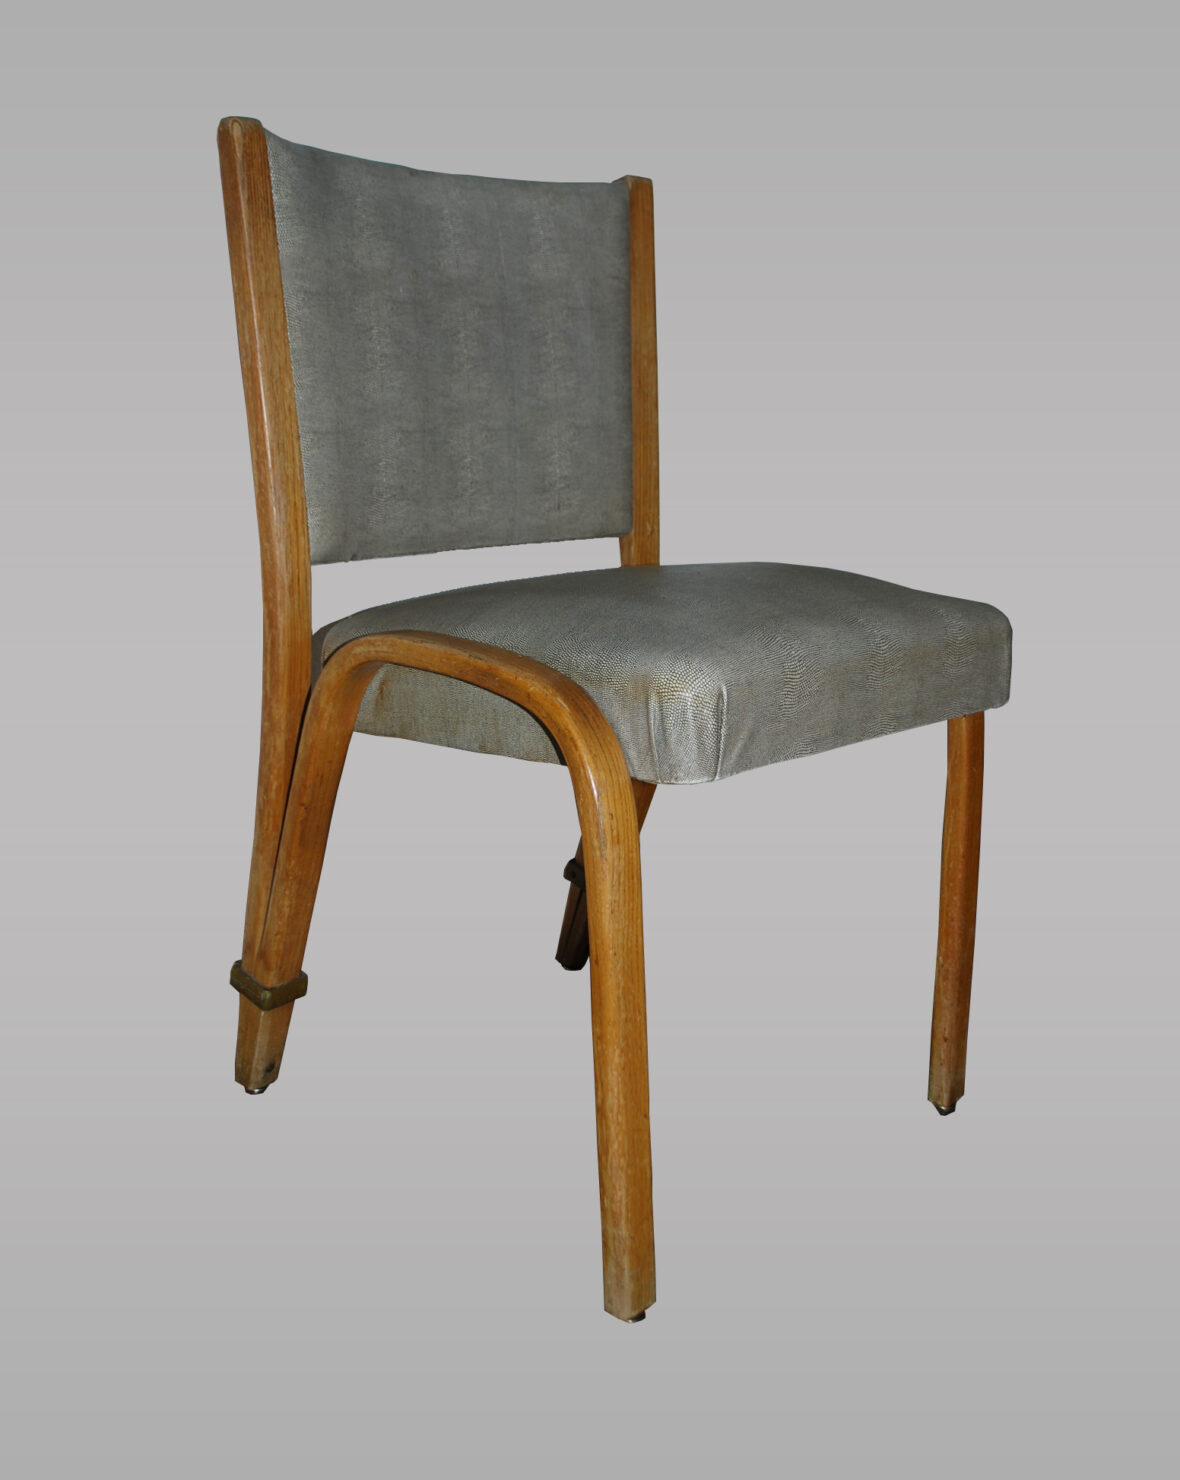 VON BODE WILHEM, pour STEINER, dessinée en 1948. Ensemble de quatre chaises en frêne massif cintré avec bague de bronze sur les pieds arrières. Assise et dossier garnis de tissu synthétique imitant le galuchat.